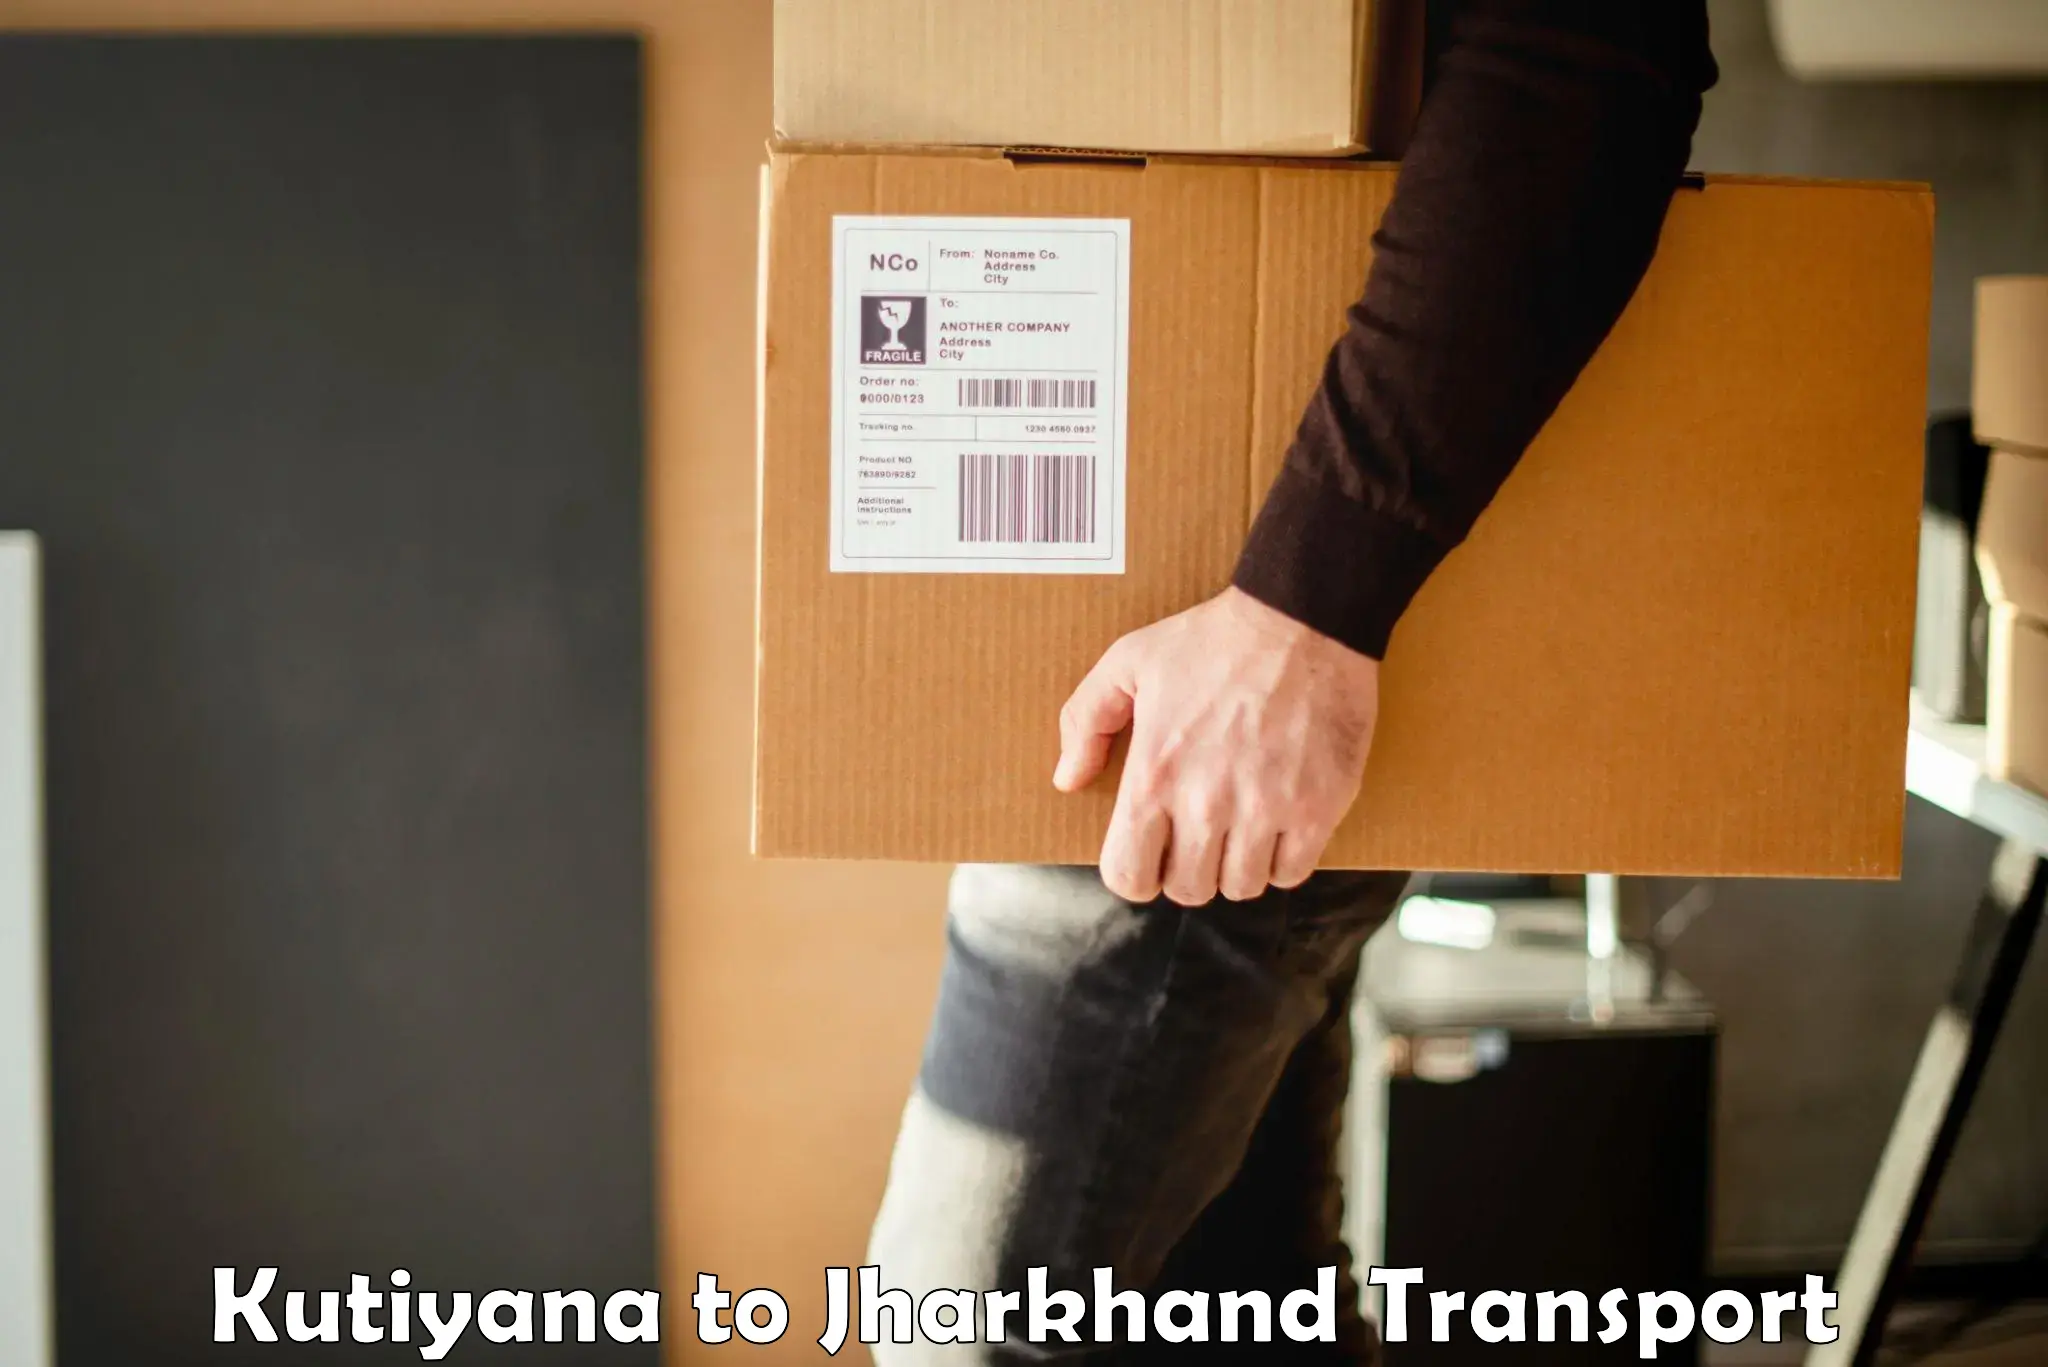 Container transport service Kutiyana to Godda